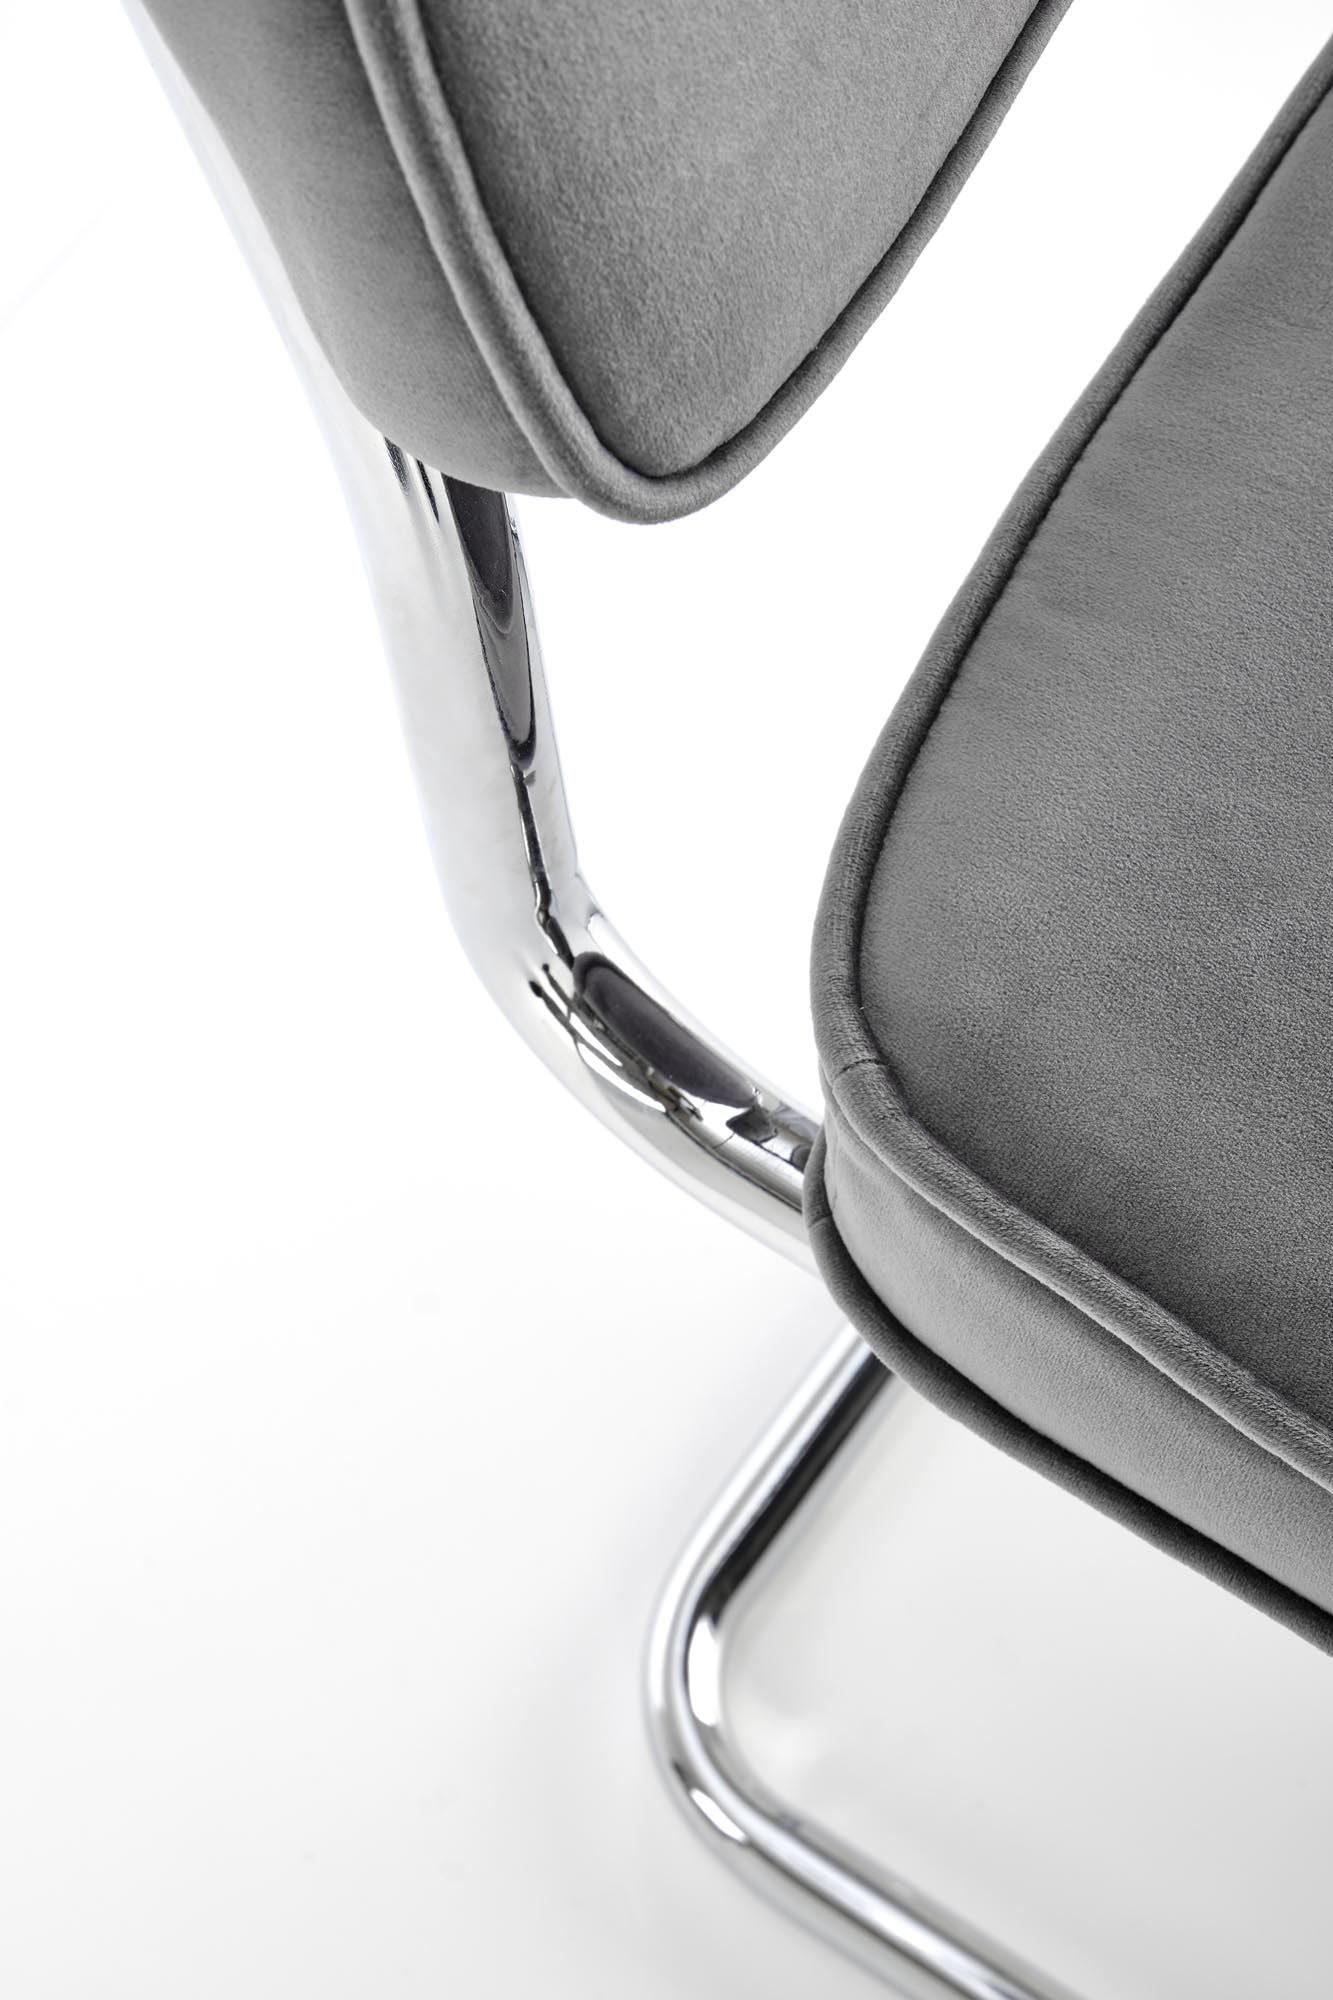 Krzeszło metalowe K510 - popielaty krzeszło metalowe k510 - popielaty